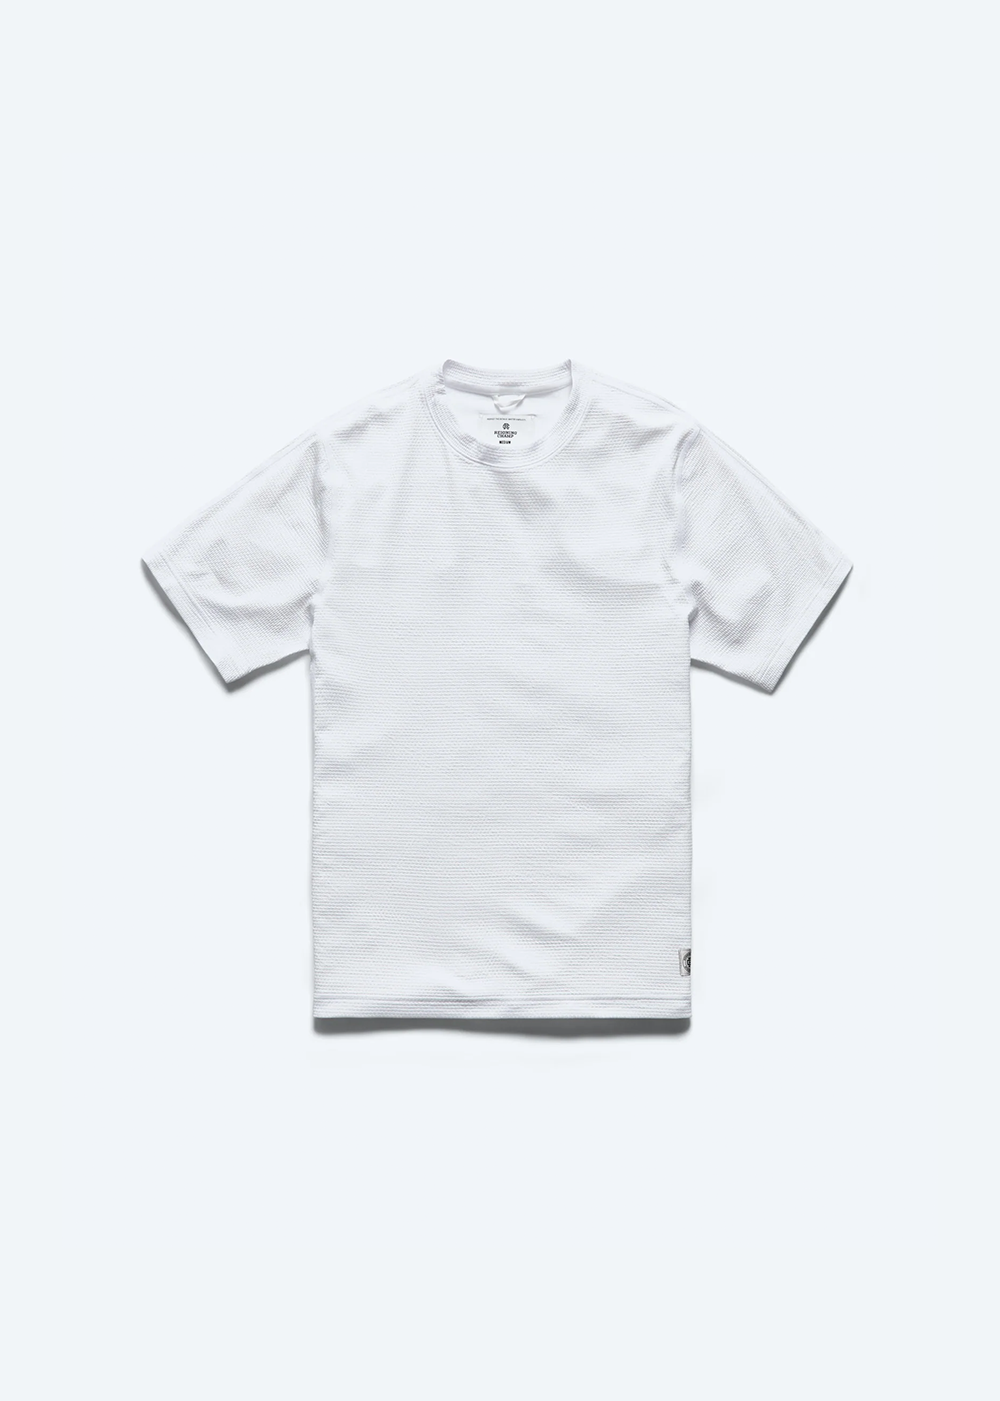 Solotex mesh Tiebreak Shirt - White - Reigning Champ - Danali - RC-1456